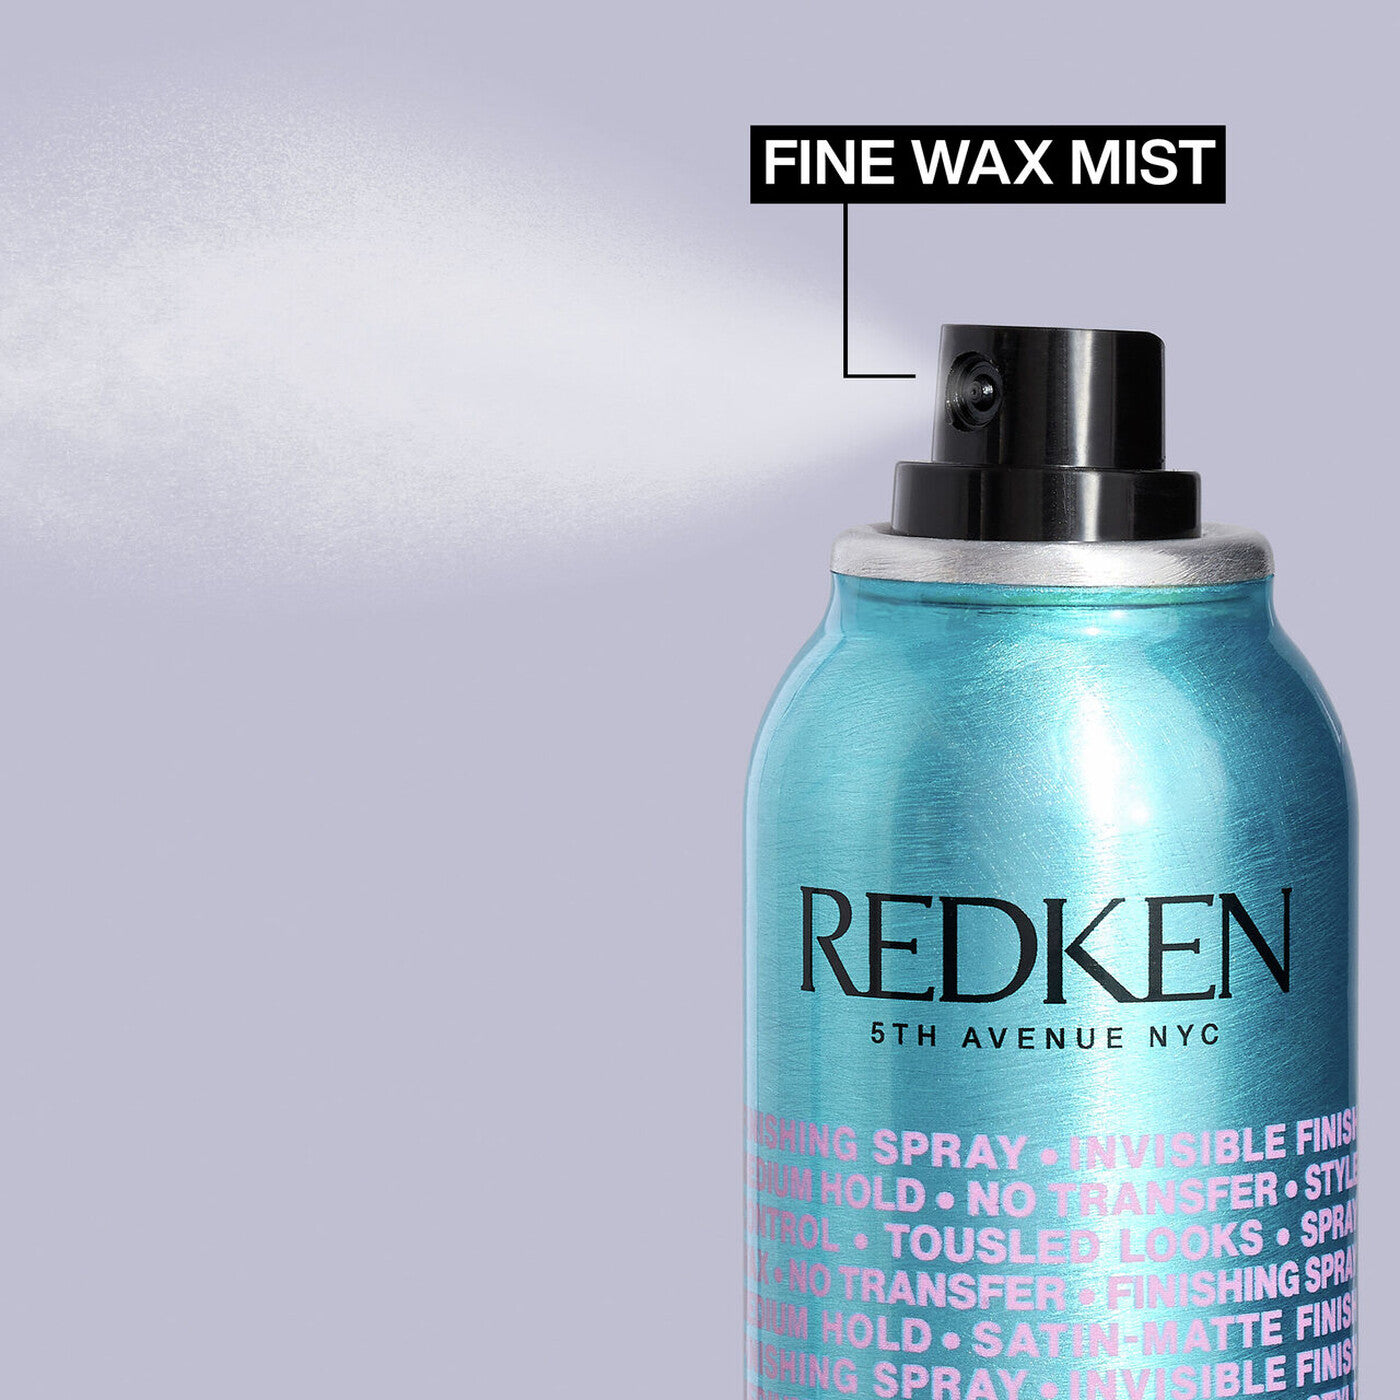 Redken Spray Wax